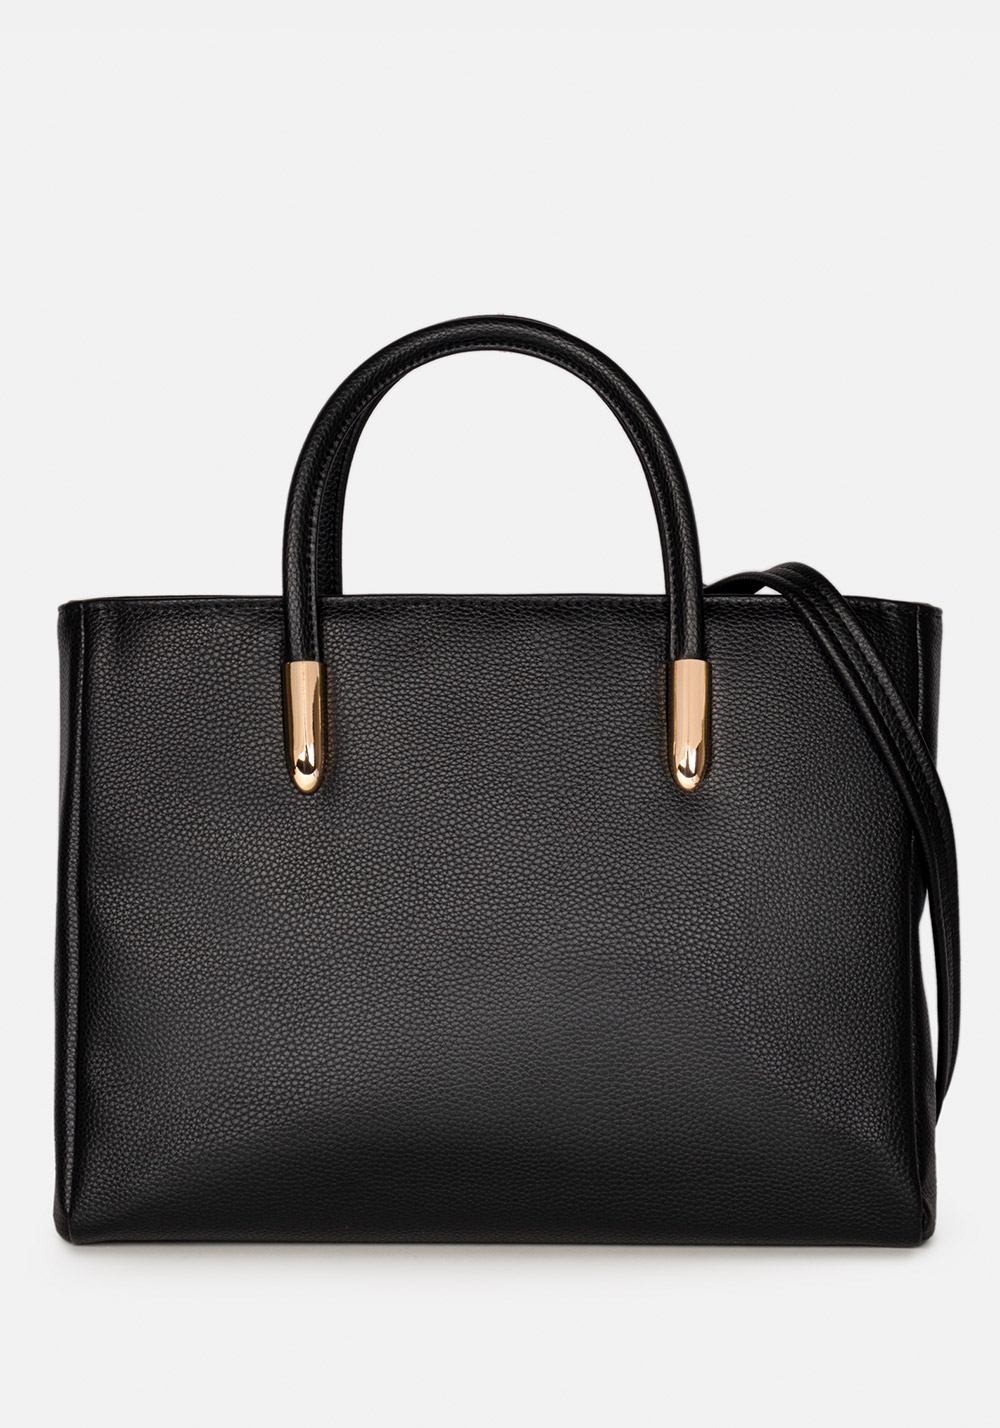 Женская сумка L-craft модель №906.2 | кожзам | зернистая | цвет черный | Р820-1 | арт. 33350 - купить от производителя оптом и в розницу